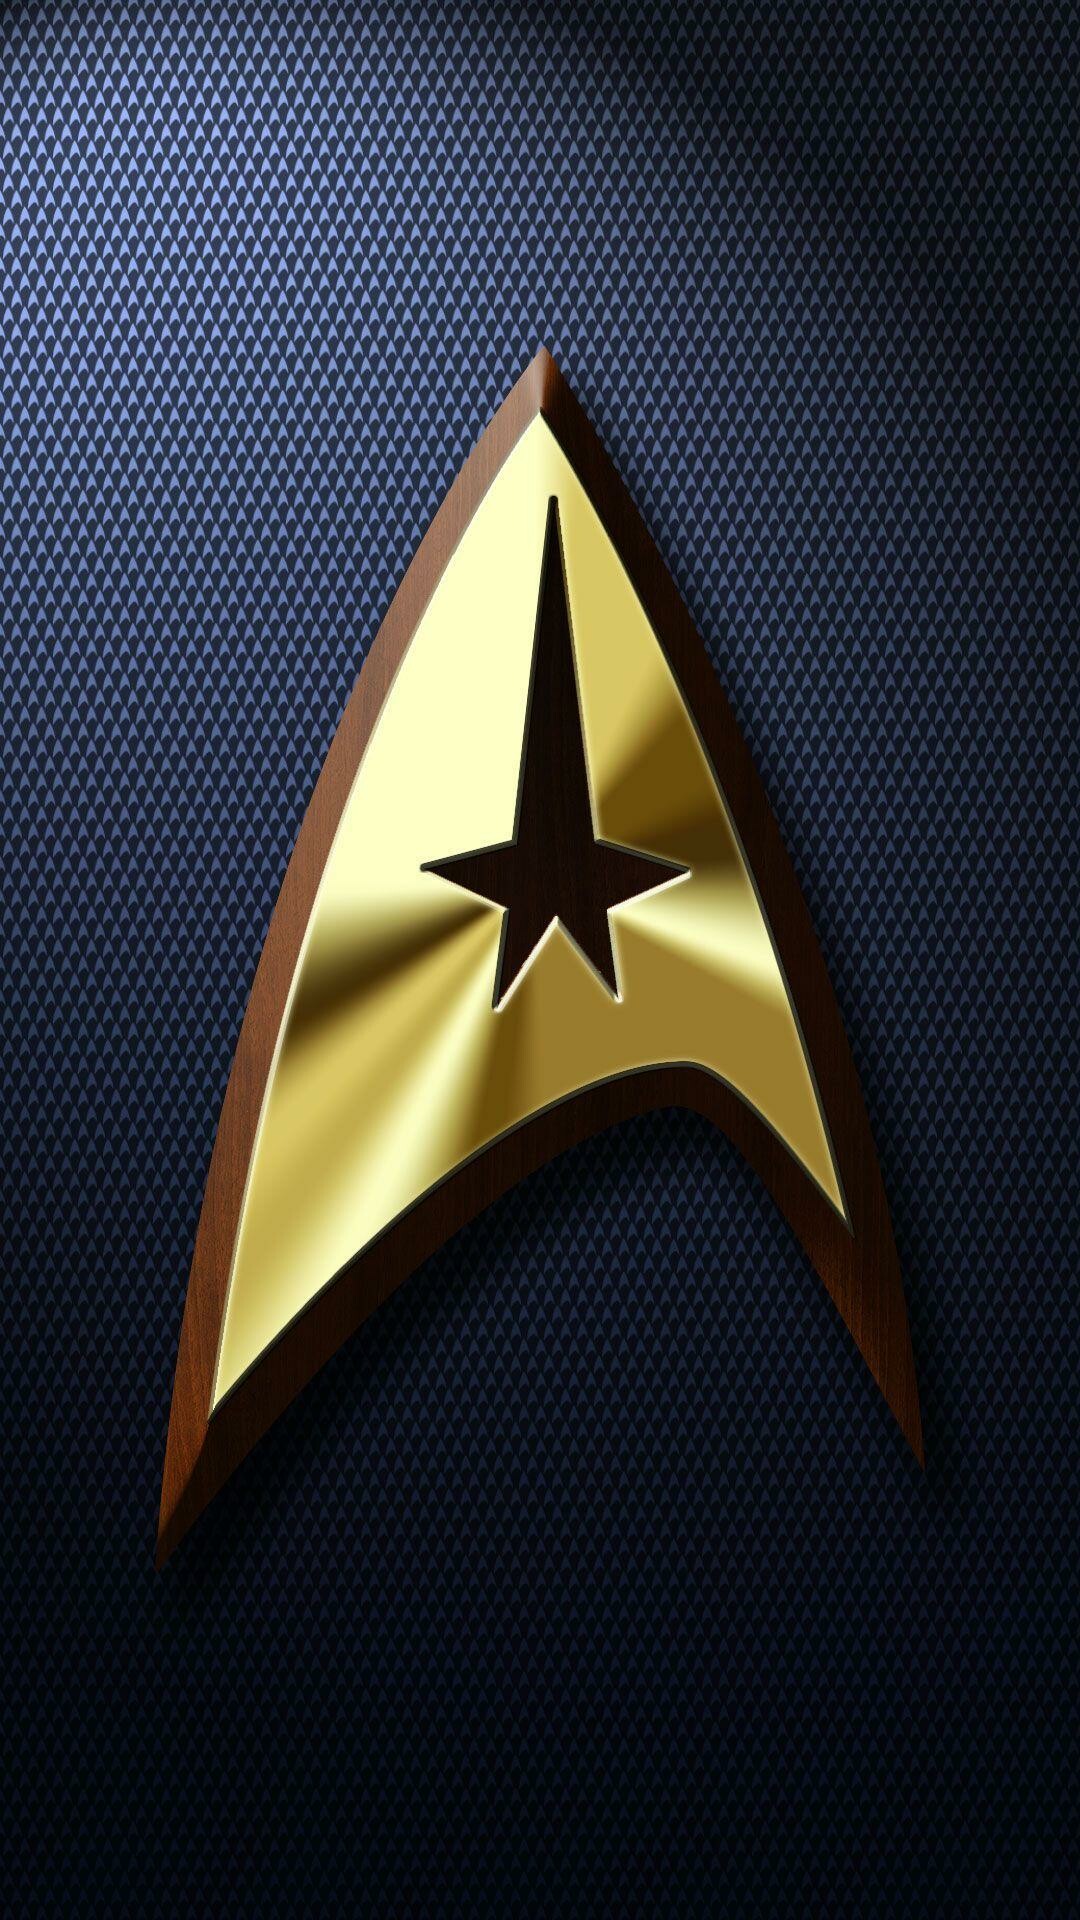 Star Trek: The Starfleet insignia, Adopted by Starfleet as its identifying emblem. 1080x1920 Full HD Wallpaper.